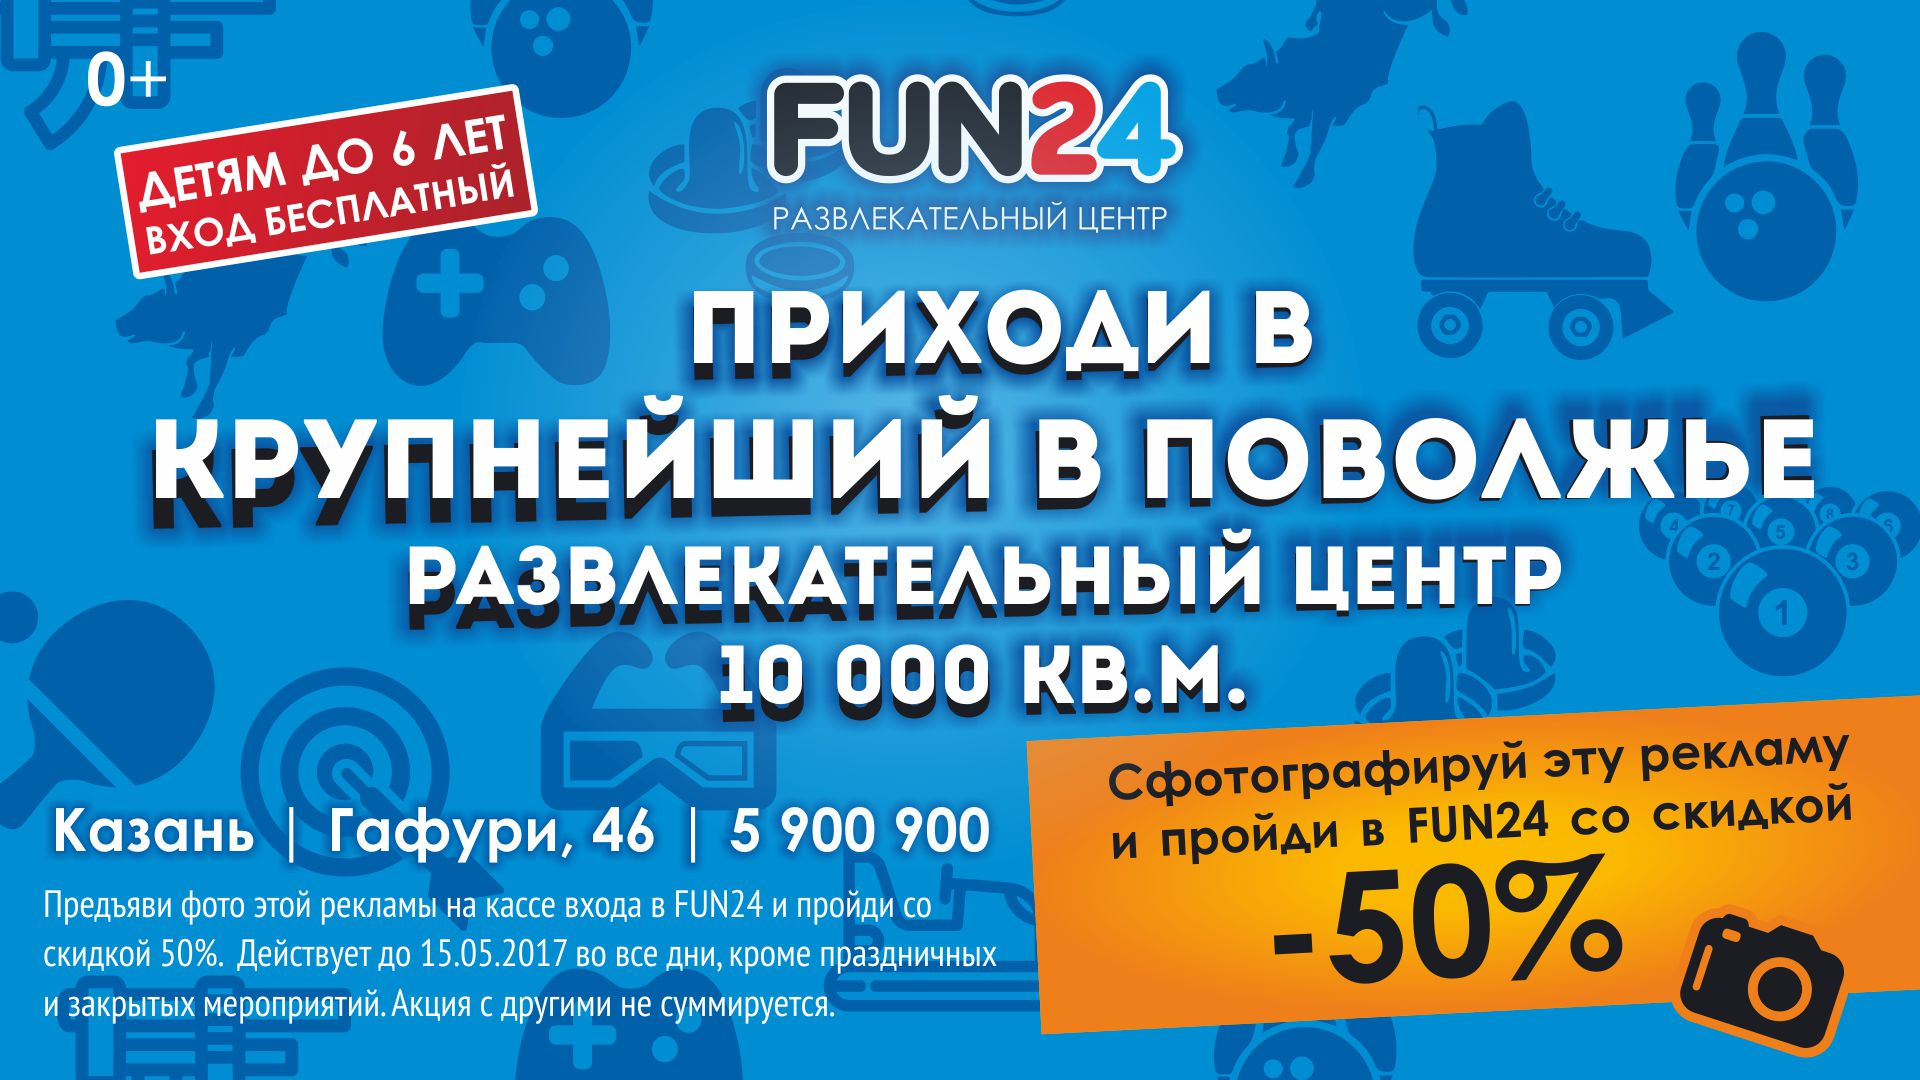 Казанский развлекательный центр FUN24 является крупнейшим  в Поволжье